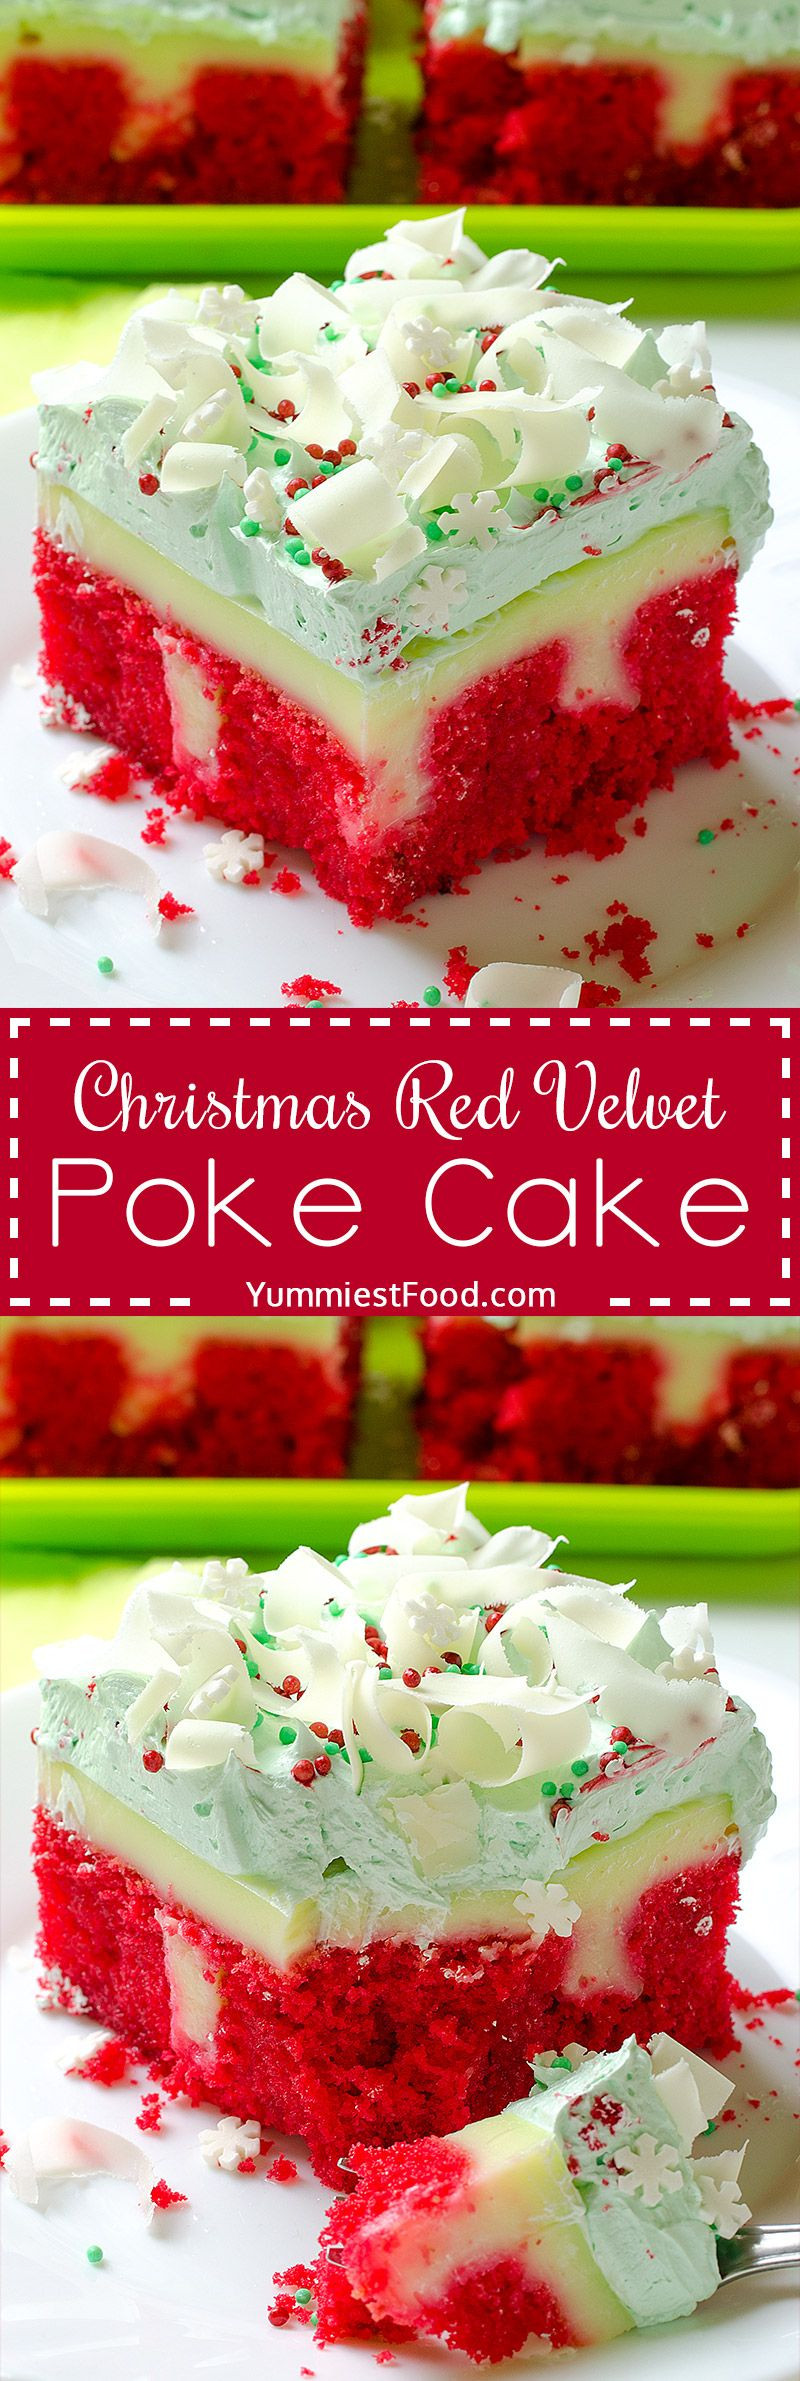 Christmas Poke Cakes
 Christmas Red Velvet Poke Cake Recipe